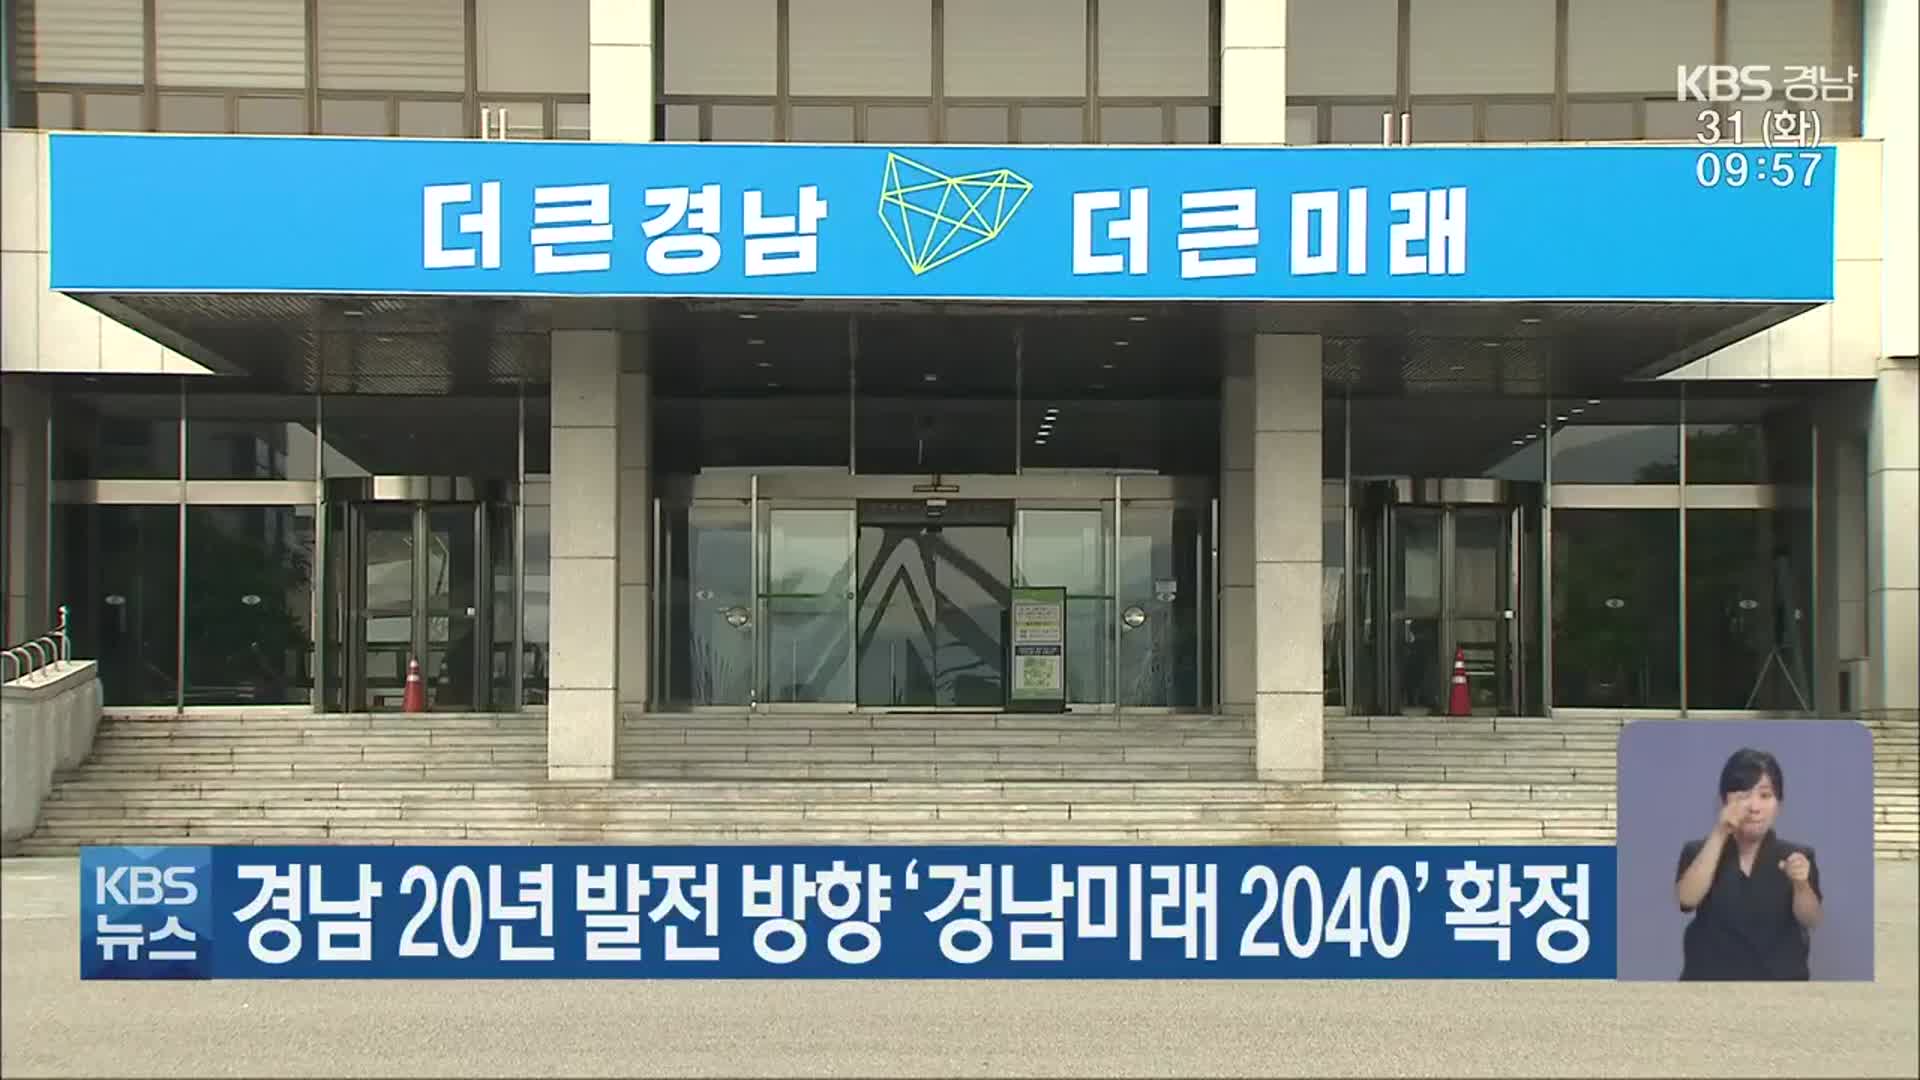 경남 20년 발전 방향 ‘경남미래 2040’ 확정